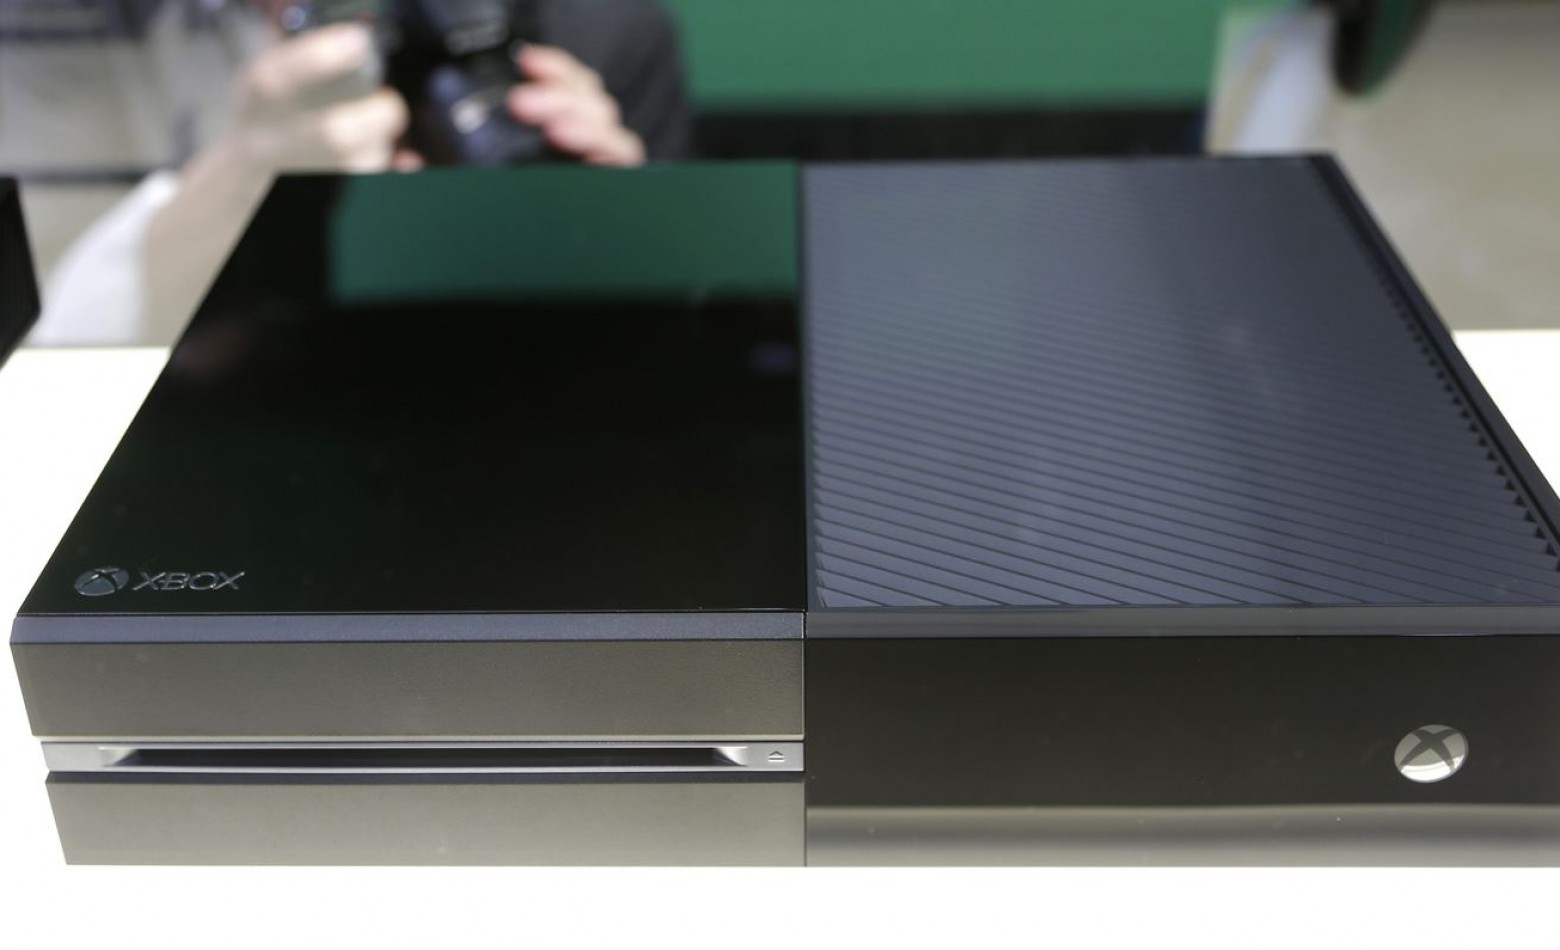 Próxima atualização do Xbox One vai dar suporte a HDs externos